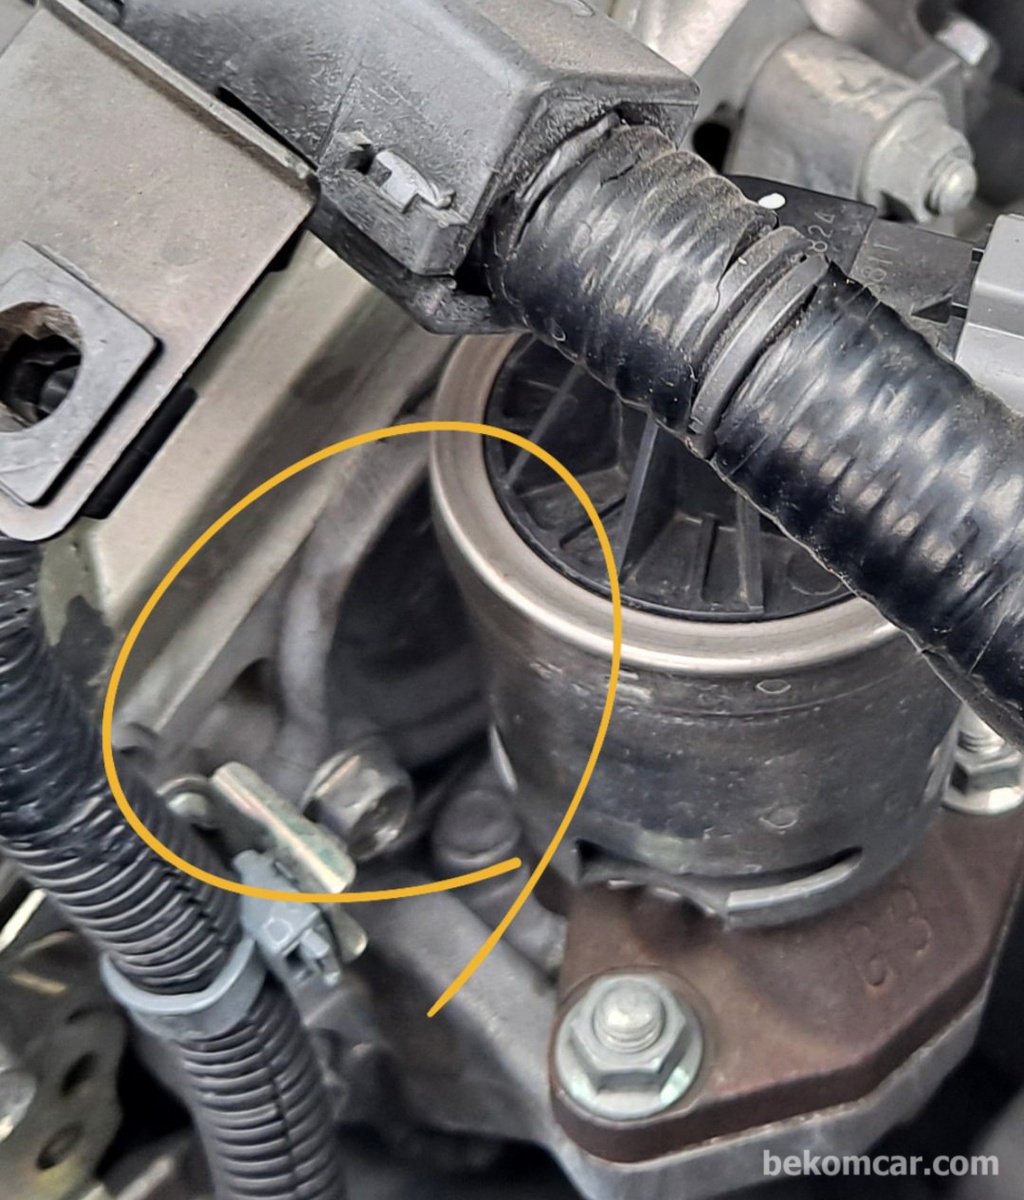 本田凸轮轴密封件漏油的二手车检查|贝科姆汽车 (bekomcar)